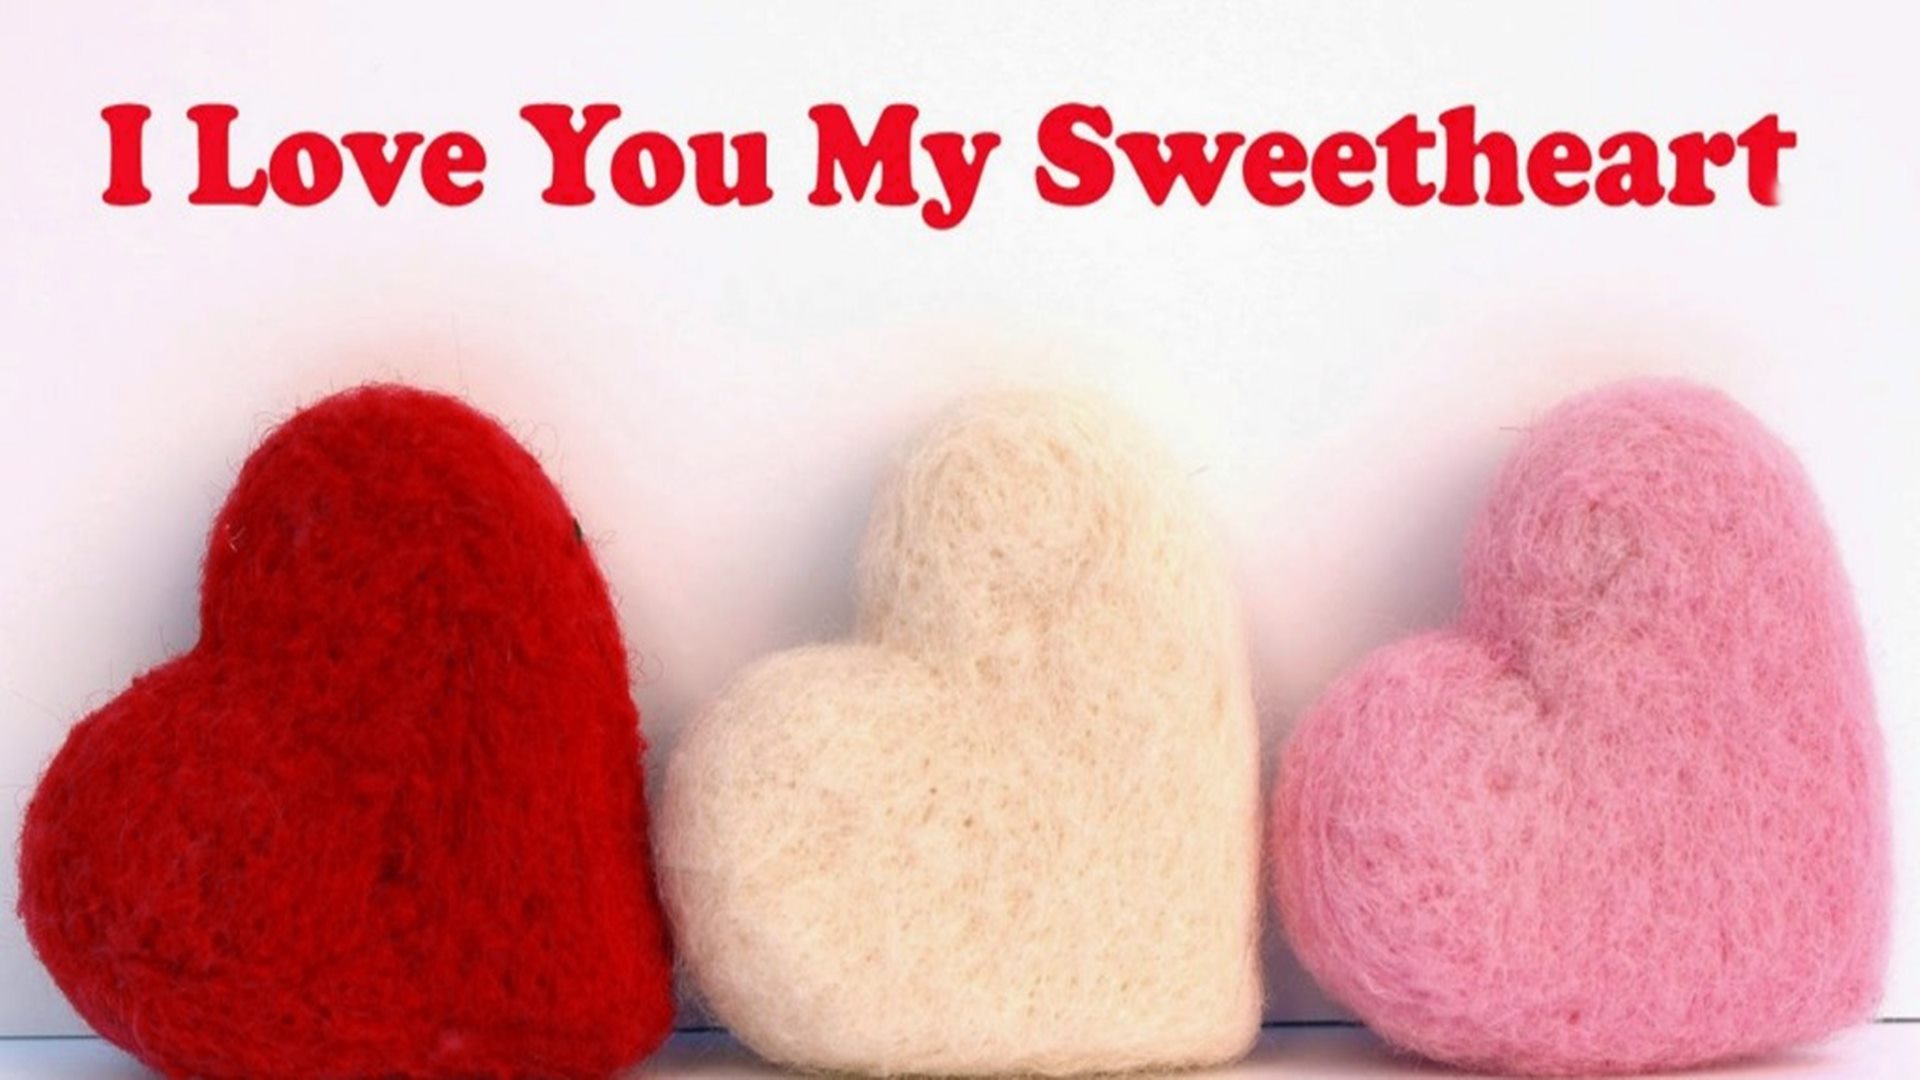 Love You Sweet Sweetheart Love - HD Wallpaper 